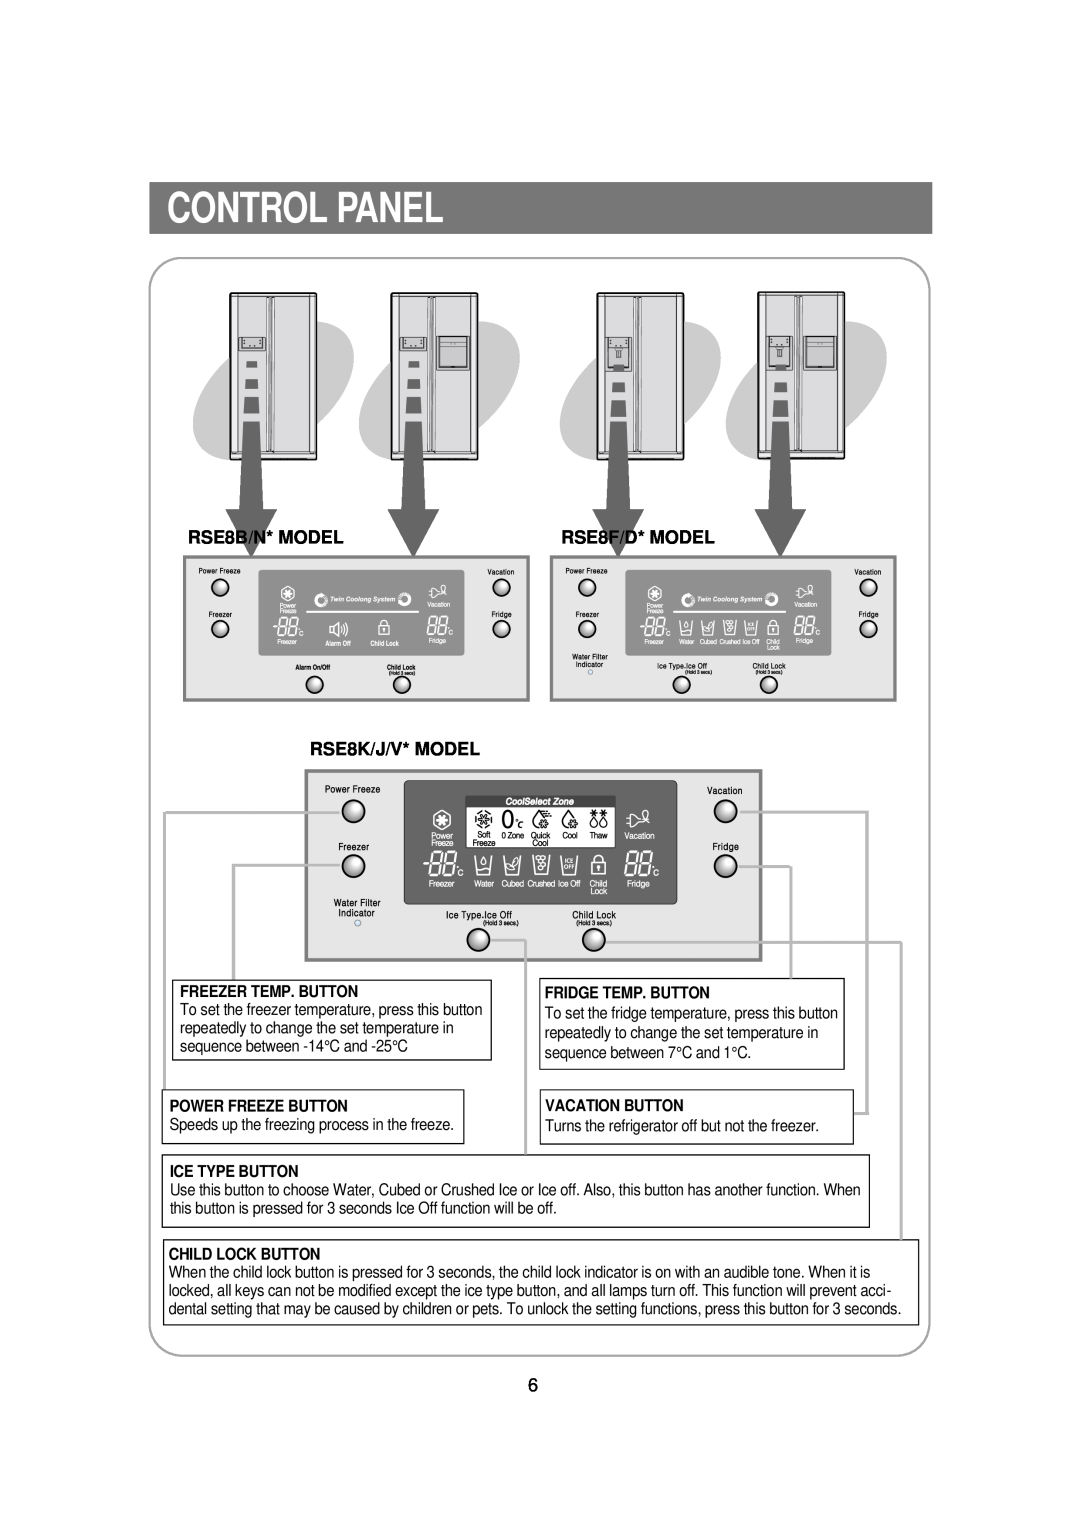 Samsung RSE8KPUS2/XEK, RSE8VPUS1/XET Control Panel, RSE8B/N* MODEL RSE8K/J/V* MODEL, RSE8F/D* MODEL, Freezer Temp. Button 